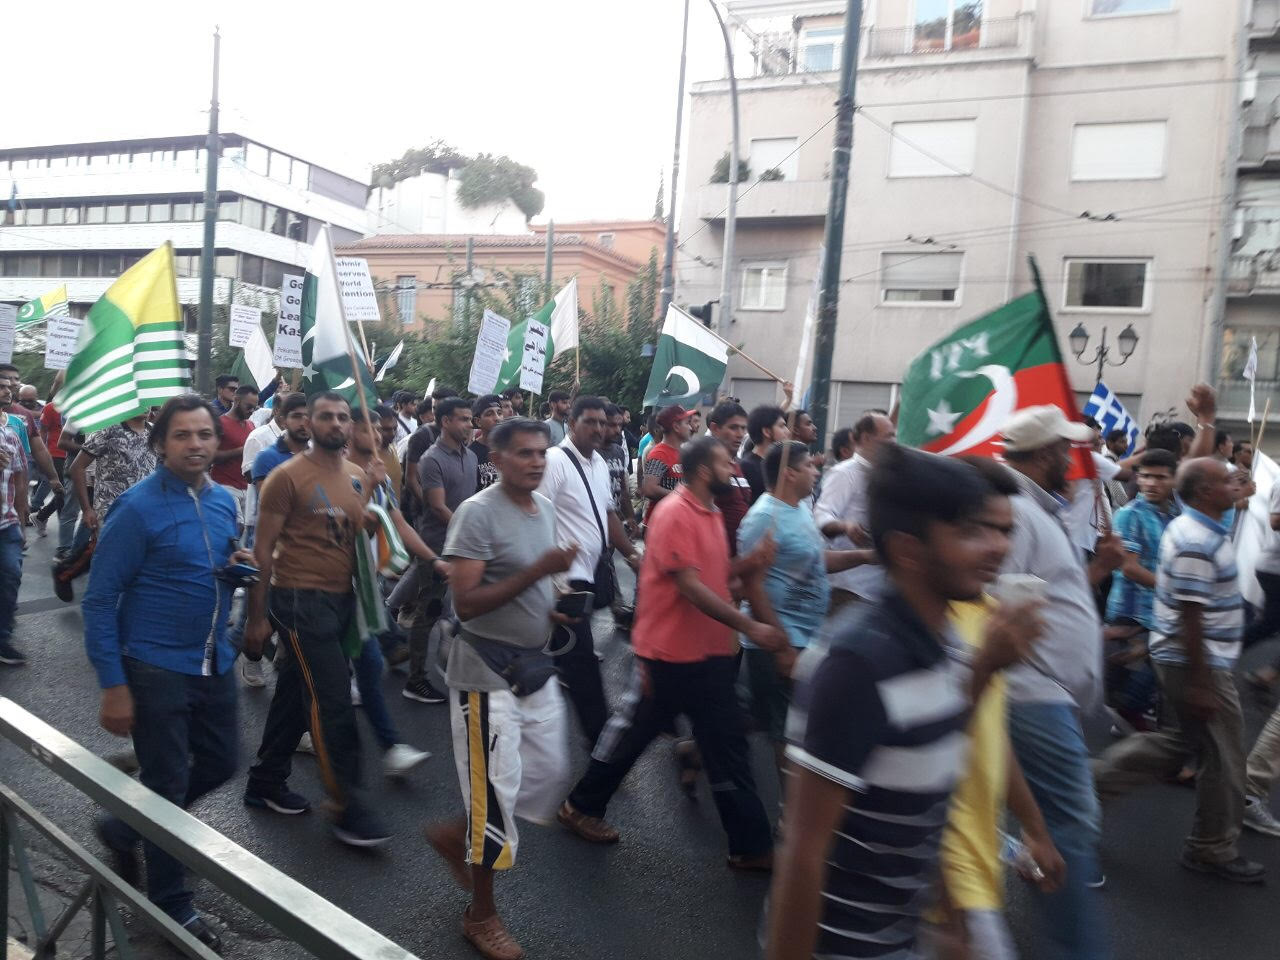 Πακιστανοί ύψωσαν σημαία-σύμβολο των τζιχαντιστών στο κέντρο της Αθήνας! (βίντεο)